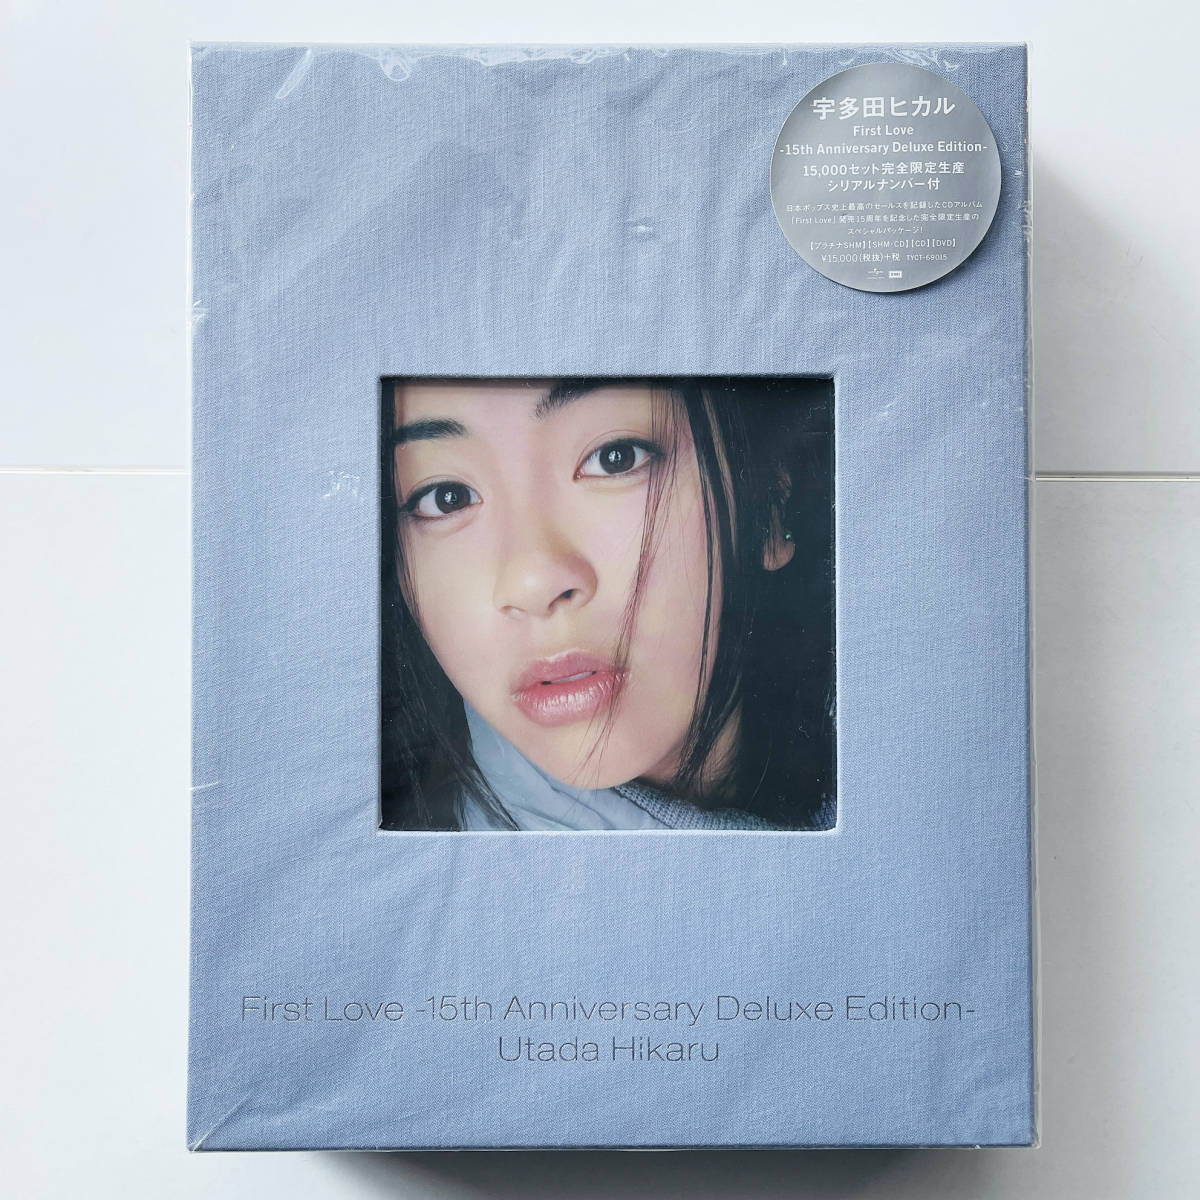 完全生産限定 シリアルナンバー付 プラチナSHM-CD/SHM-CD/CD/DVD〔 宇多田ヒカル - First Love 15th Anniversary Deluxe Edition〕